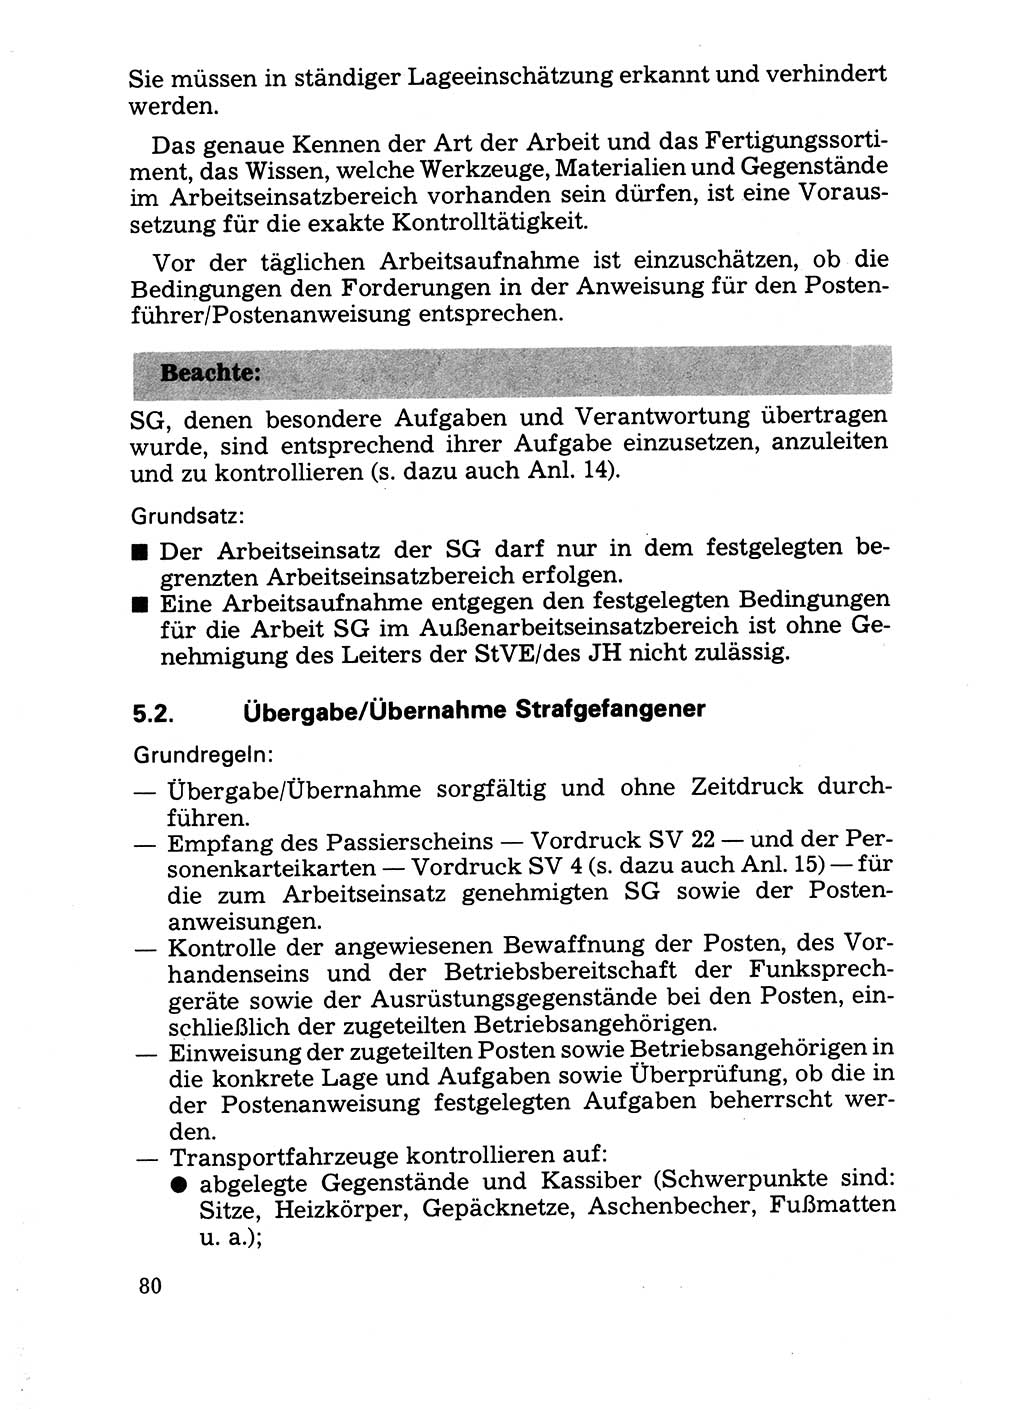 Handbuch für operative Dienste, Abteilung Strafvollzug (SV) [Ministerium des Innern (MdI) Deutsche Demokratische Republik (DDR)] 1981, Seite 80 (Hb. op. D. Abt. SV MdI DDR 1981, S. 80)